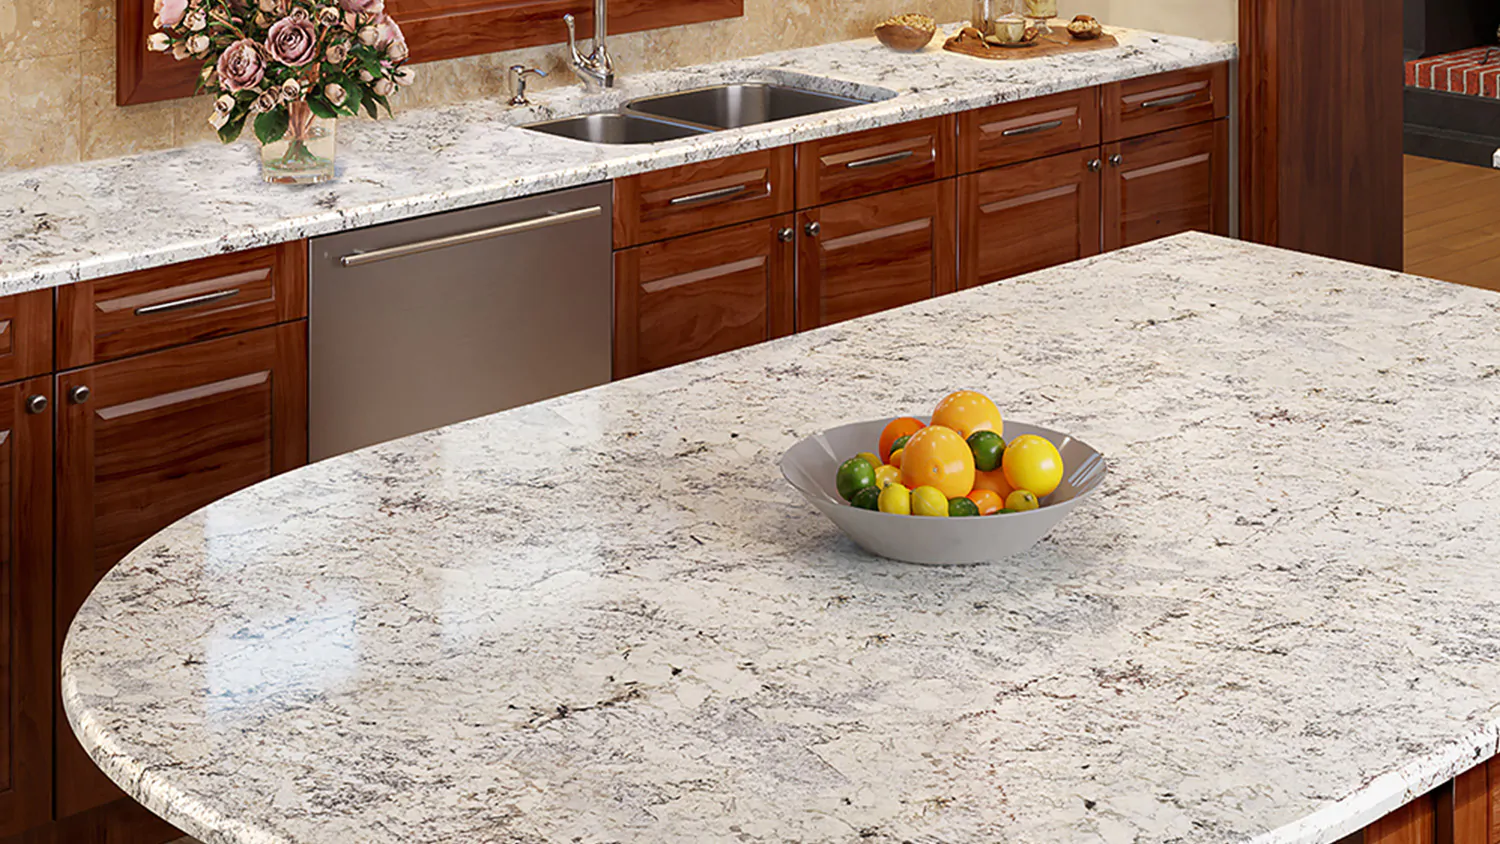 Carote white granite • Compare & find best price now »